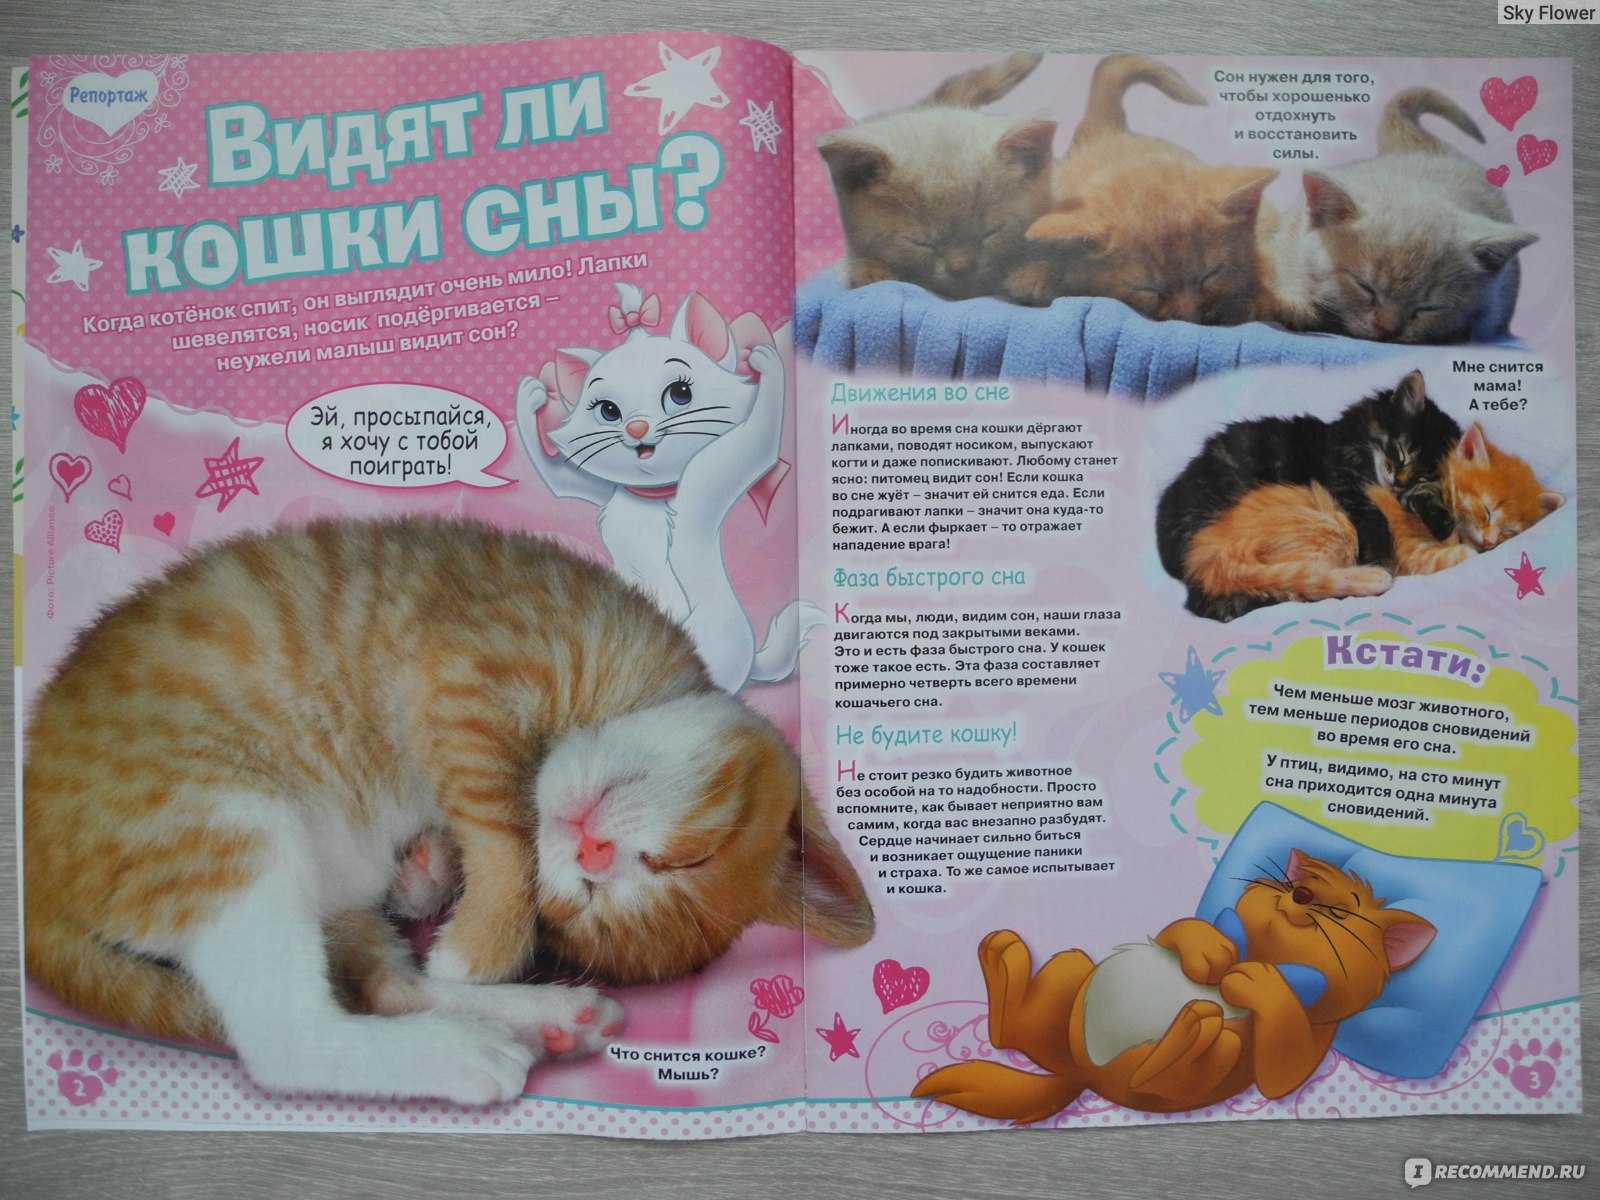 Сонник к чему снится кошка с котятами